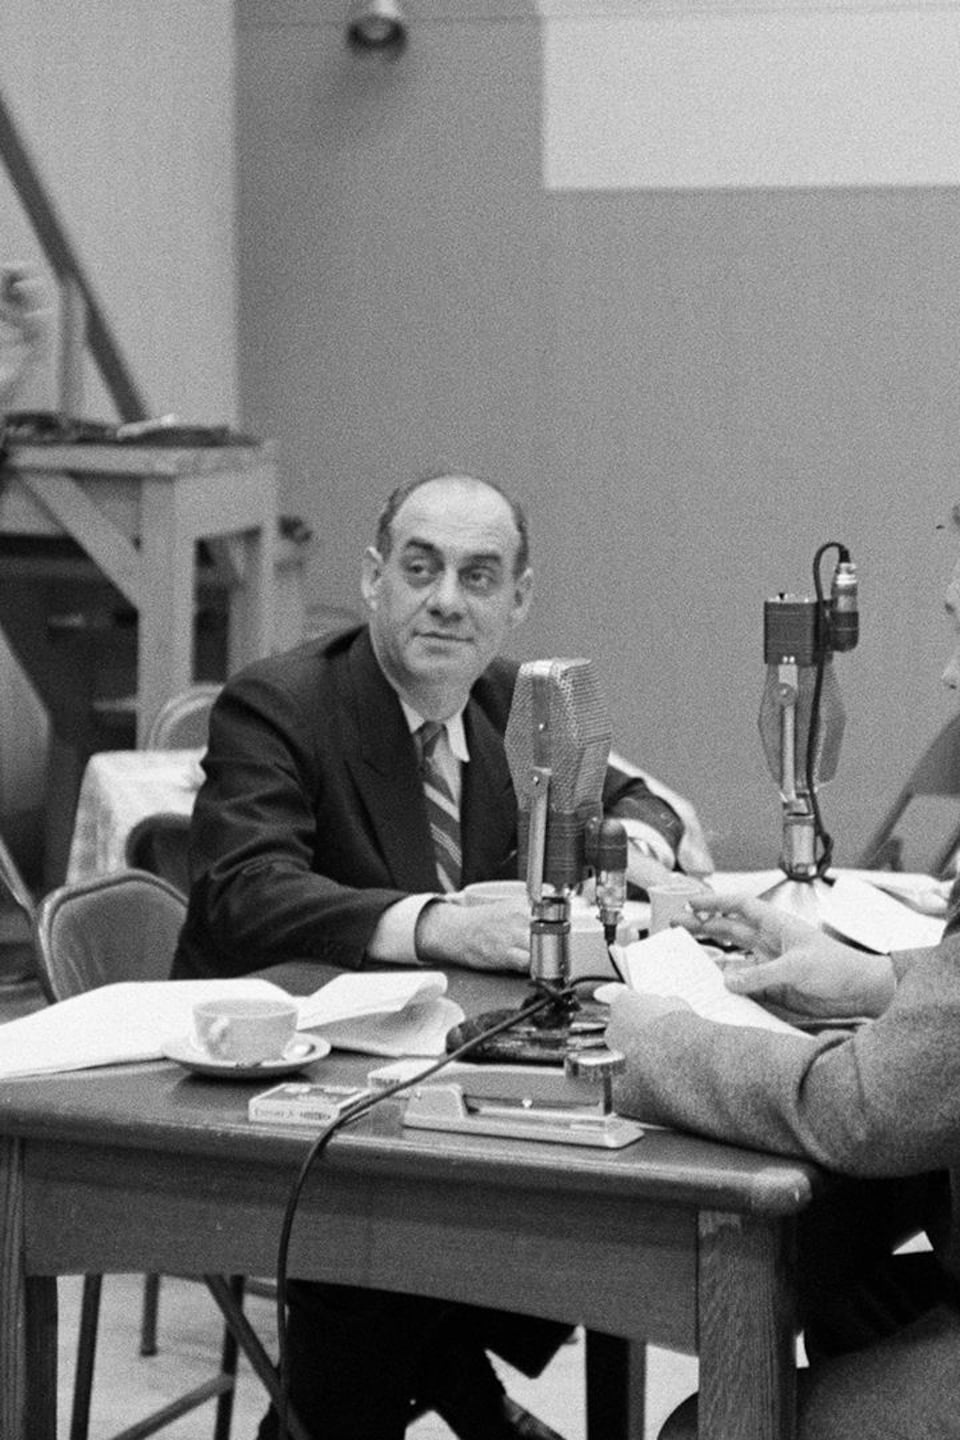 Dans un studio de radio, une femme non identifiée, le réalisateur Paul Legendre
qui tape des mains, l'animateur Miville Couture, Jean Mathieu et Lorenzo Campagna, assis à la table.